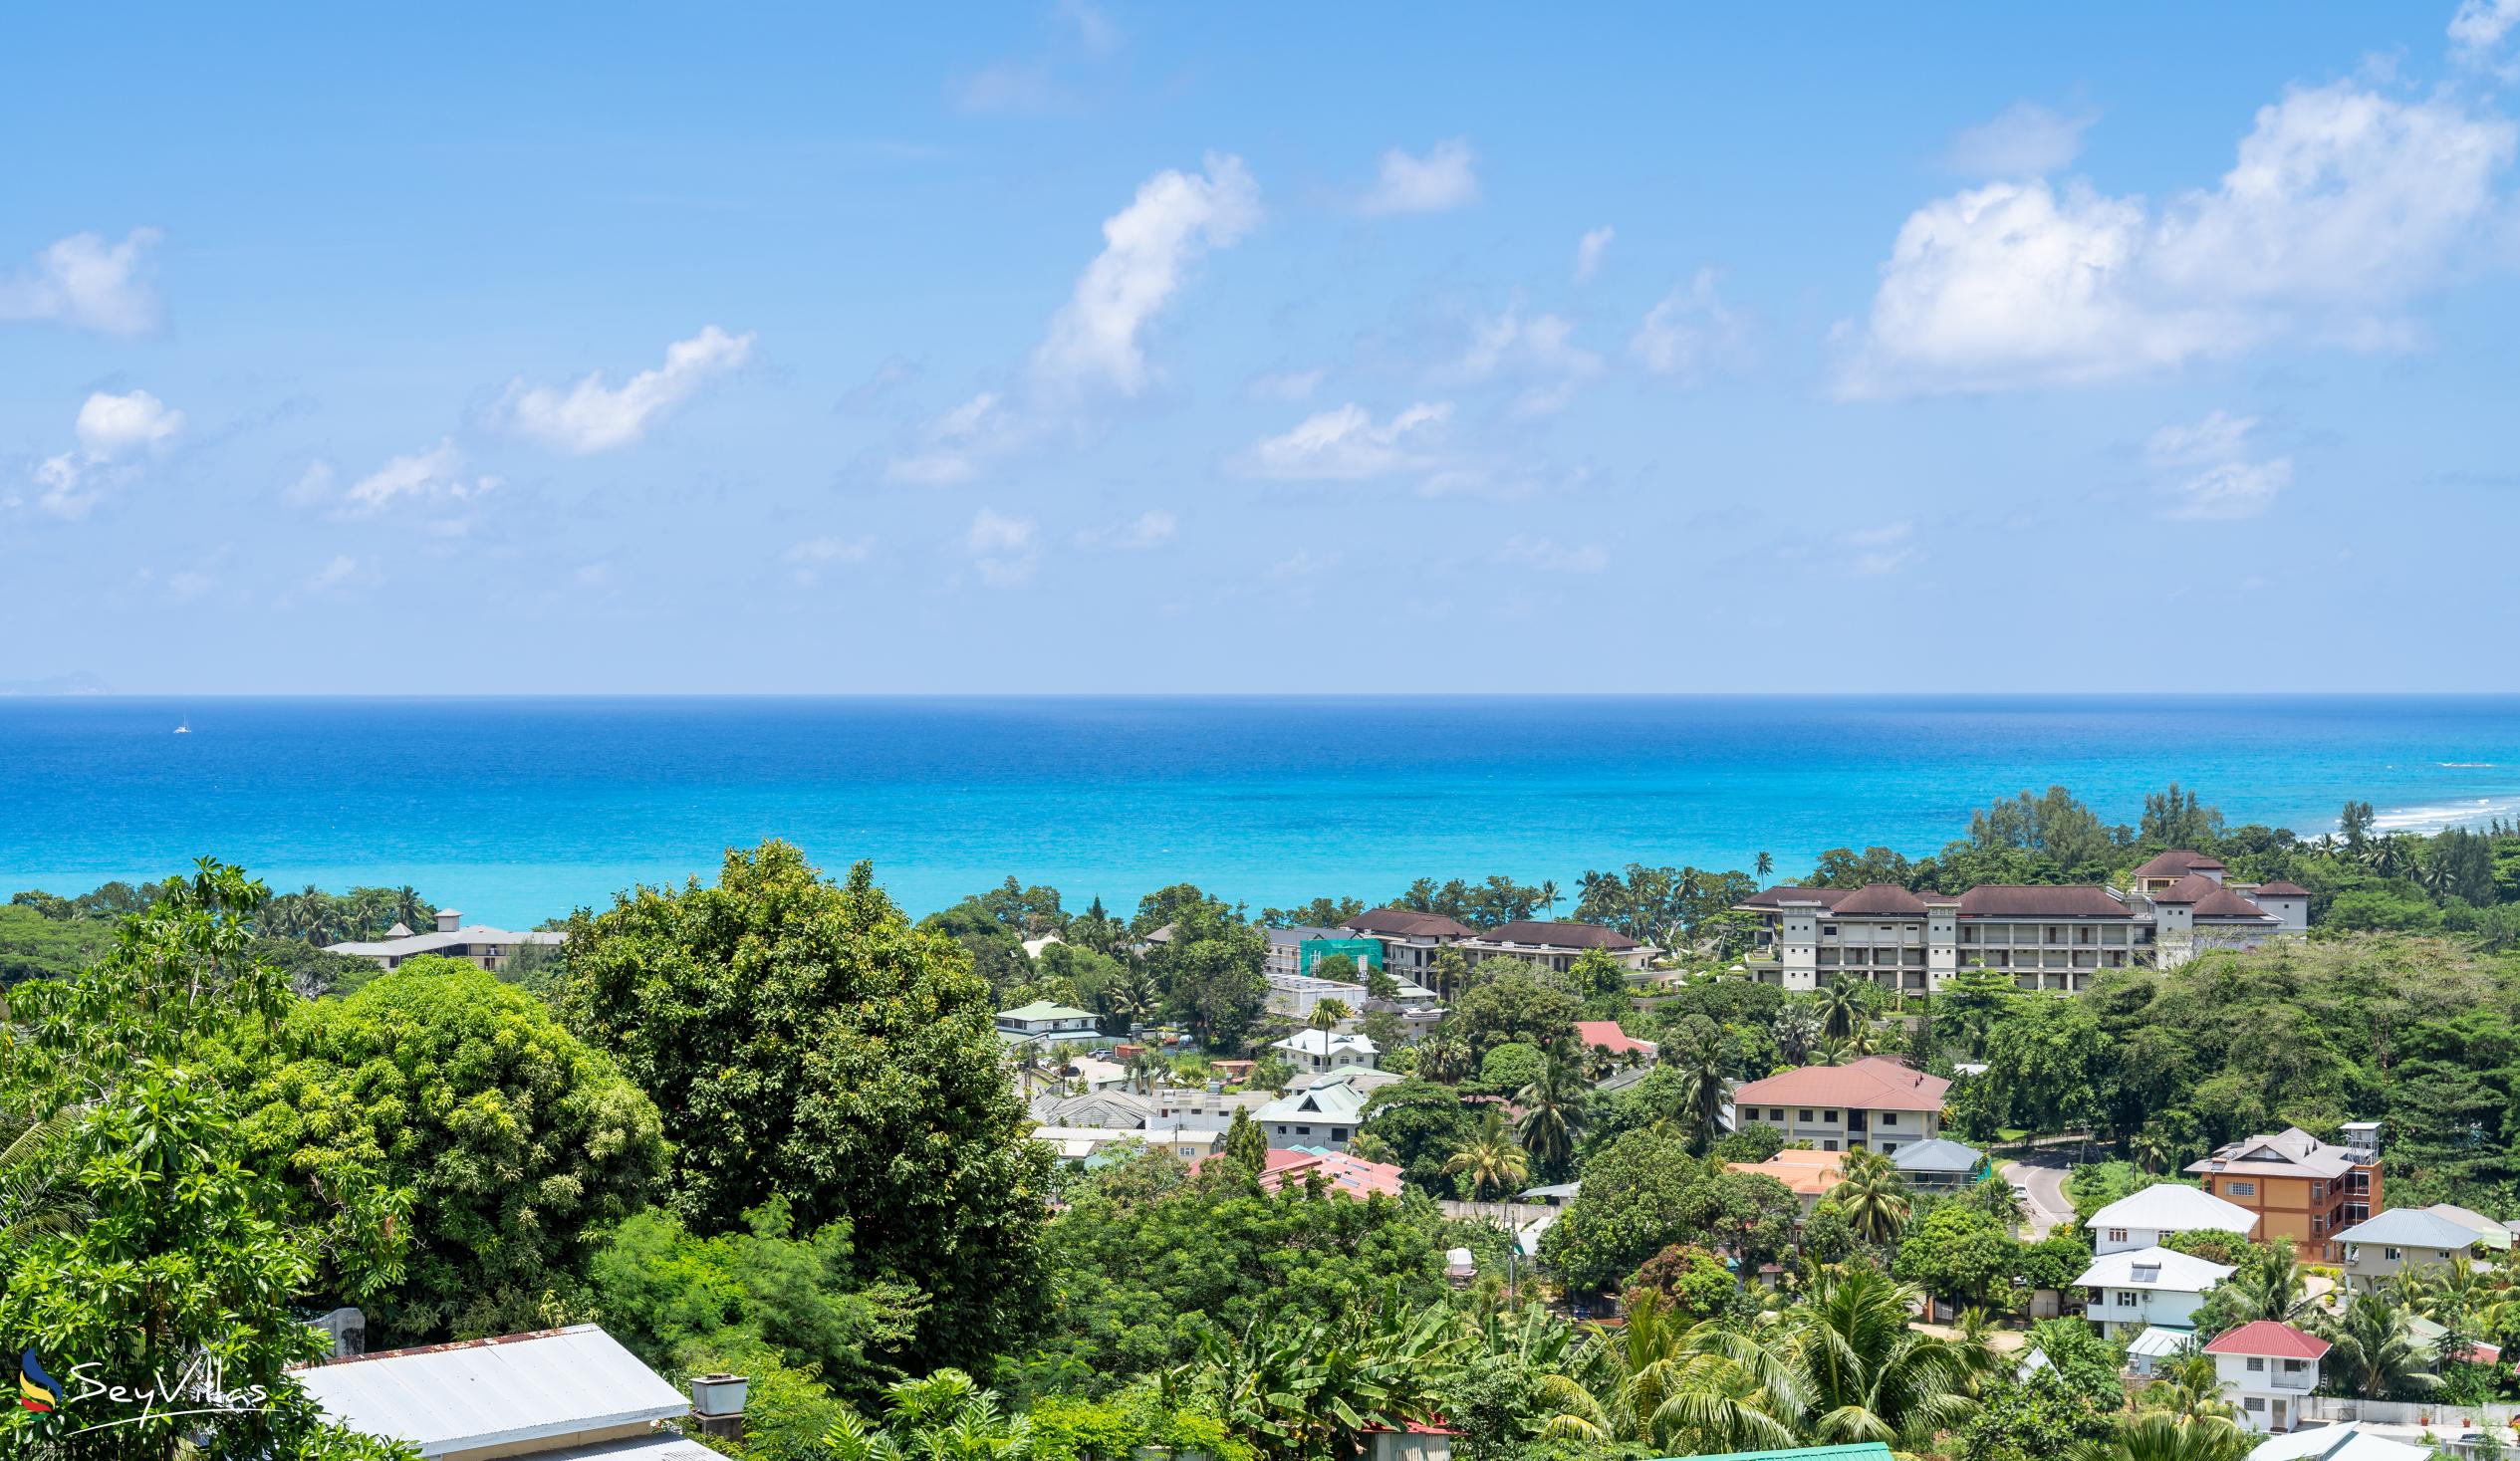 Foto 17: Tama's Holiday Apartments - Location - Mahé (Seychelles)